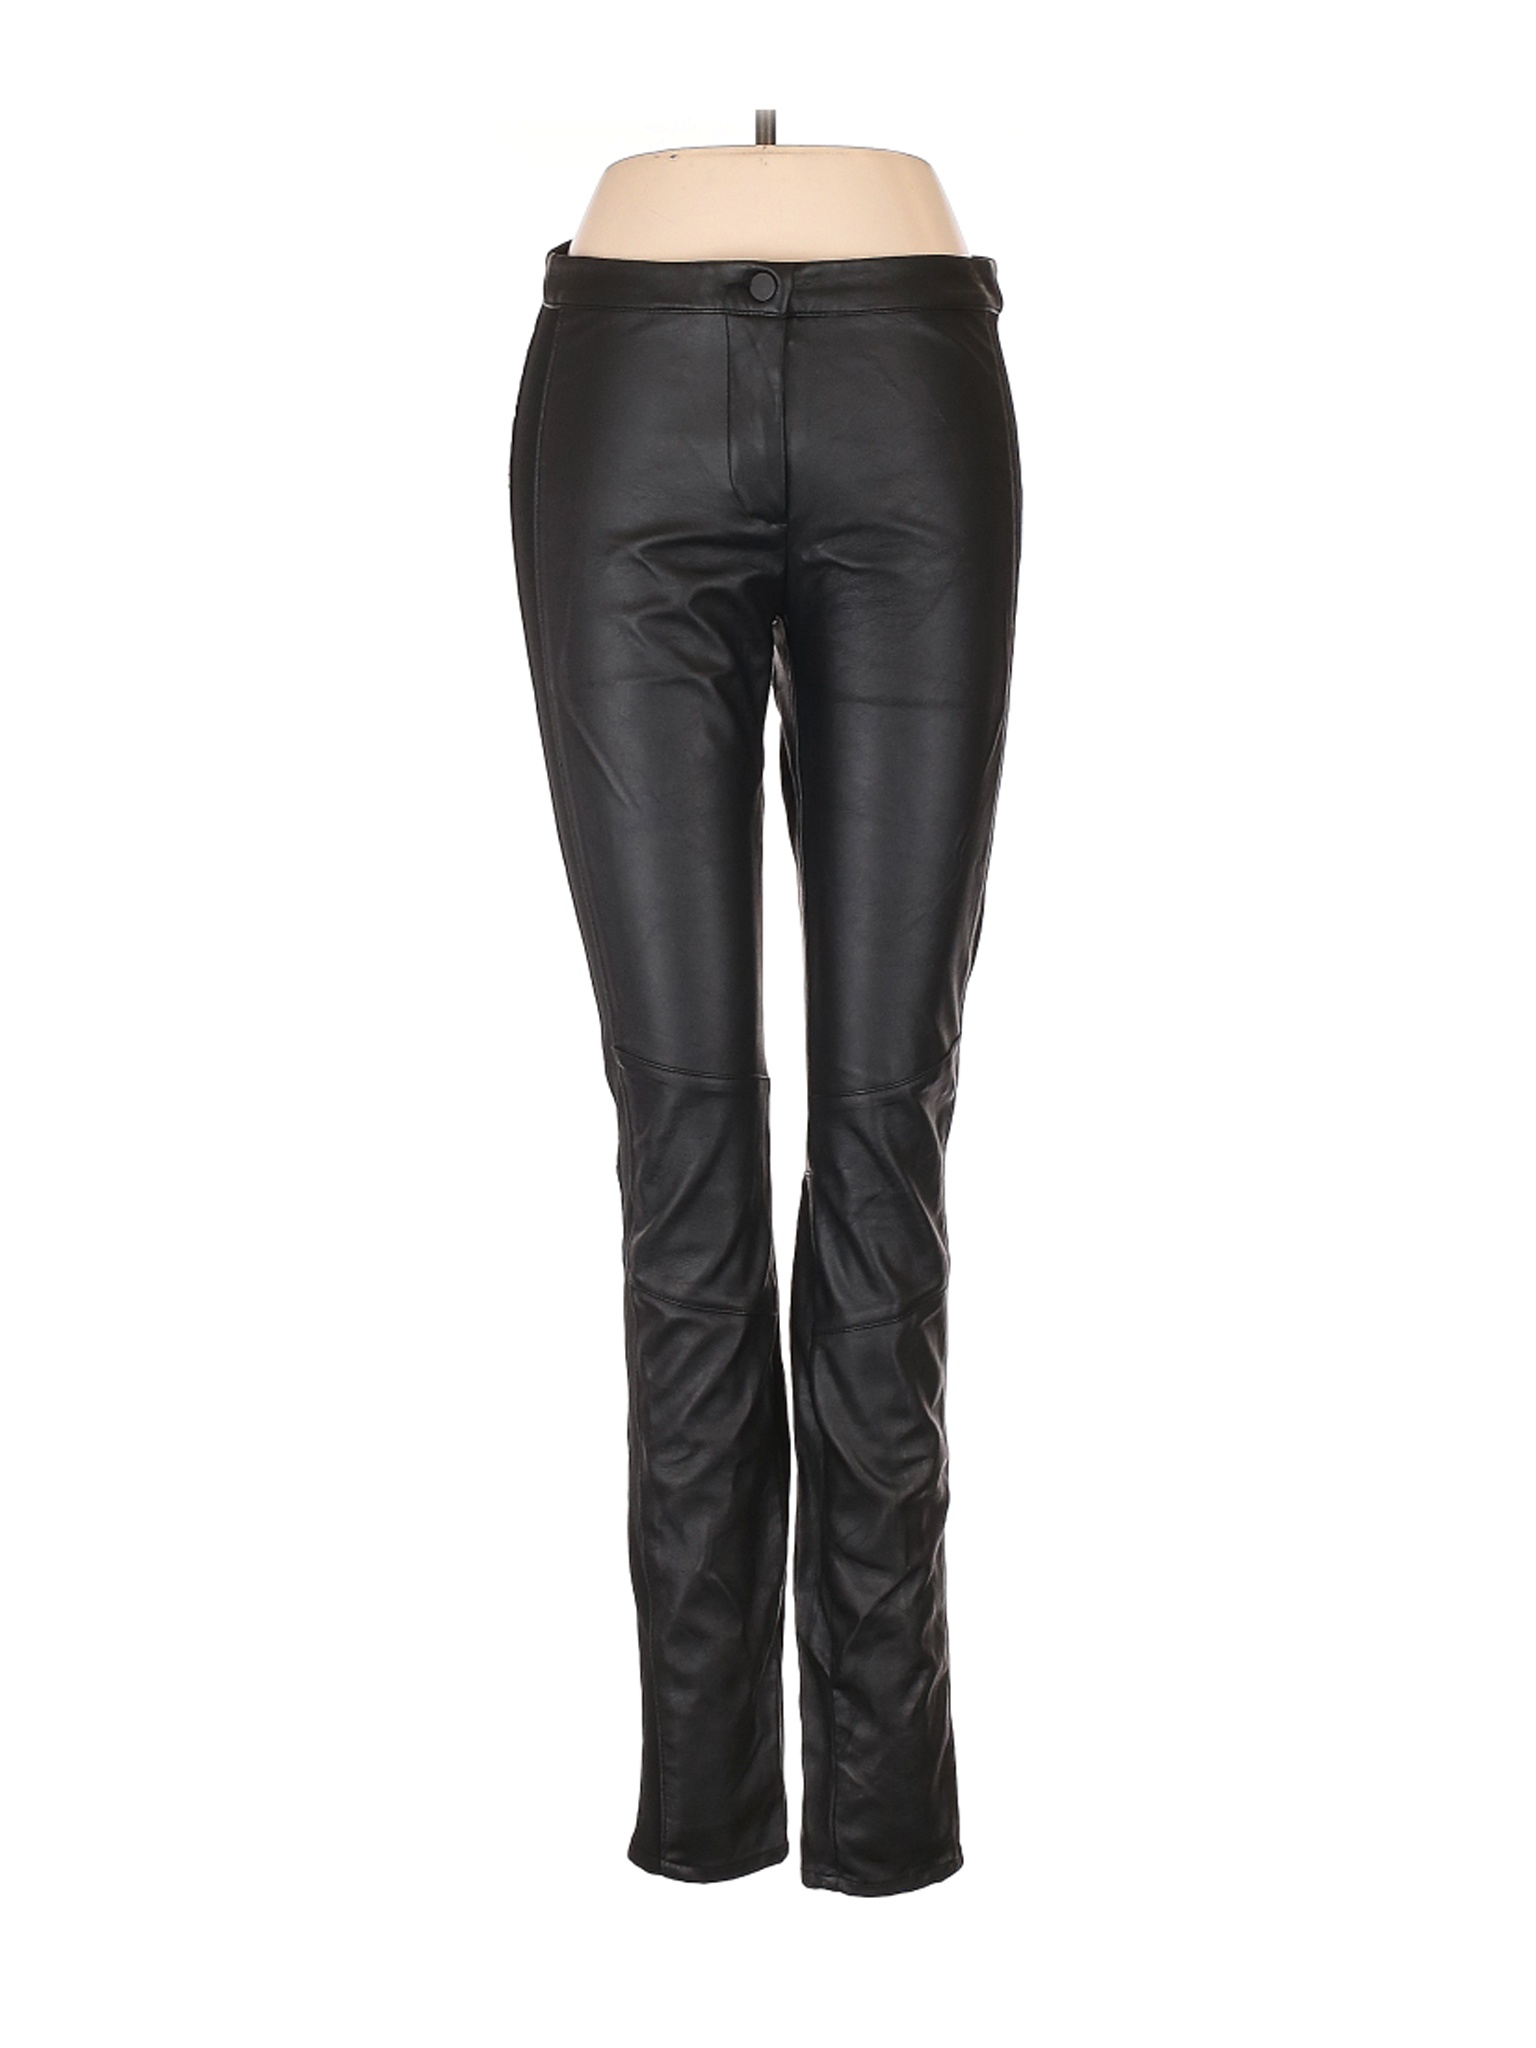 H&M Women Black Faux Leather Pants 6 | eBay